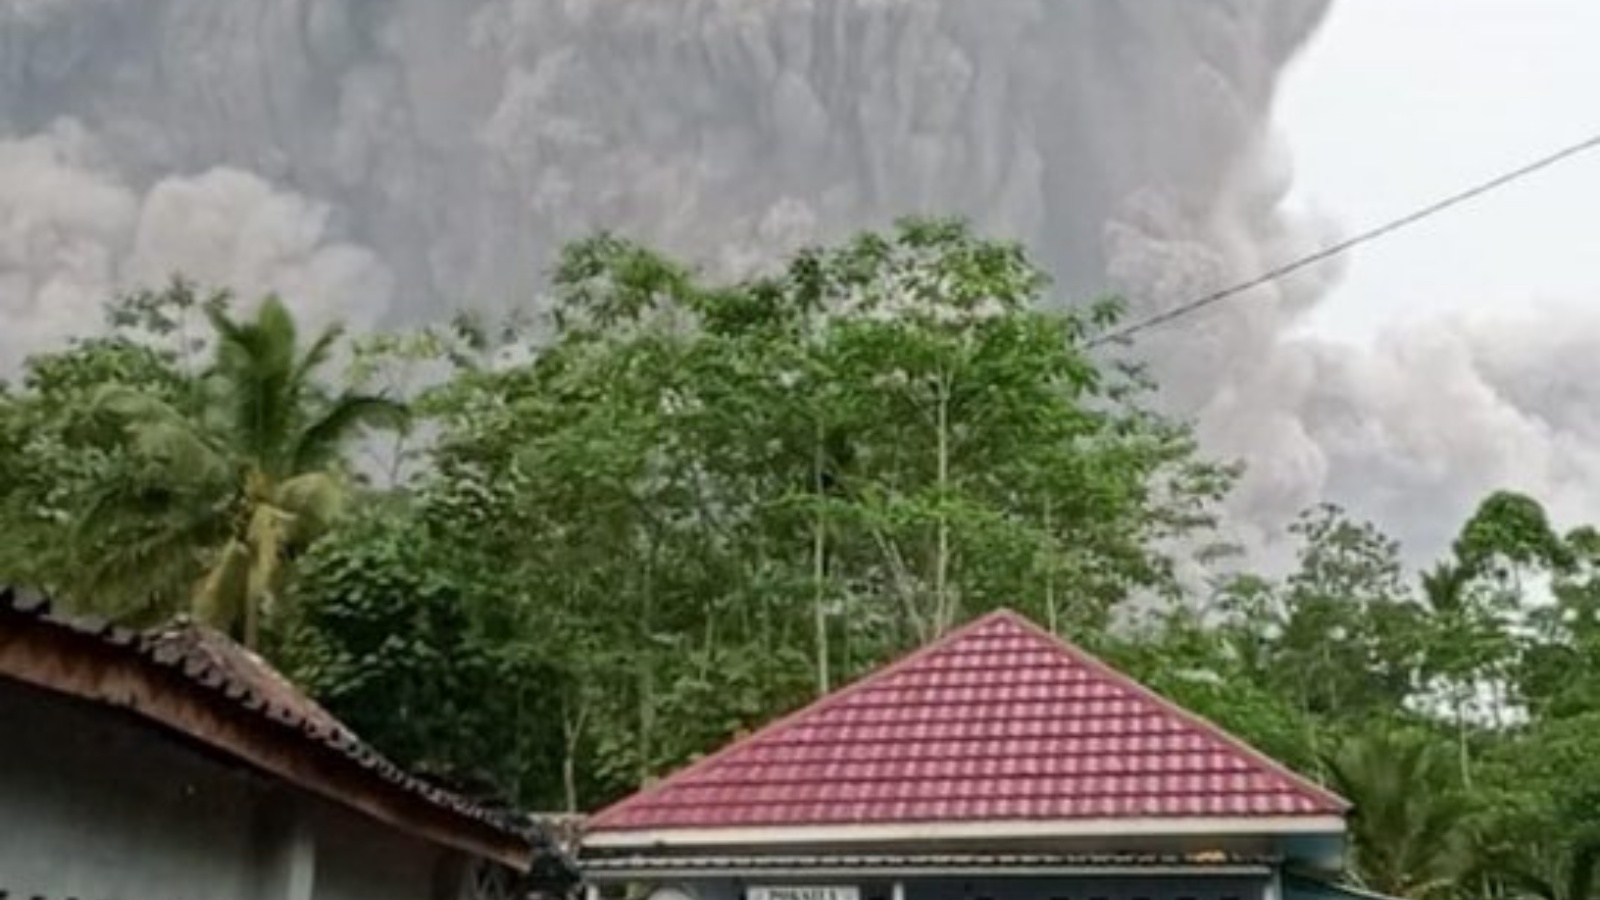 رماد وغازات كثيفة تغطي قرية كورا كيروبوكان في إندونيسيا بعد ثوران بركان سيميرو. السبت في 4 كانون الأول/ ديسمبر 2021 (الصورة من تويتر)